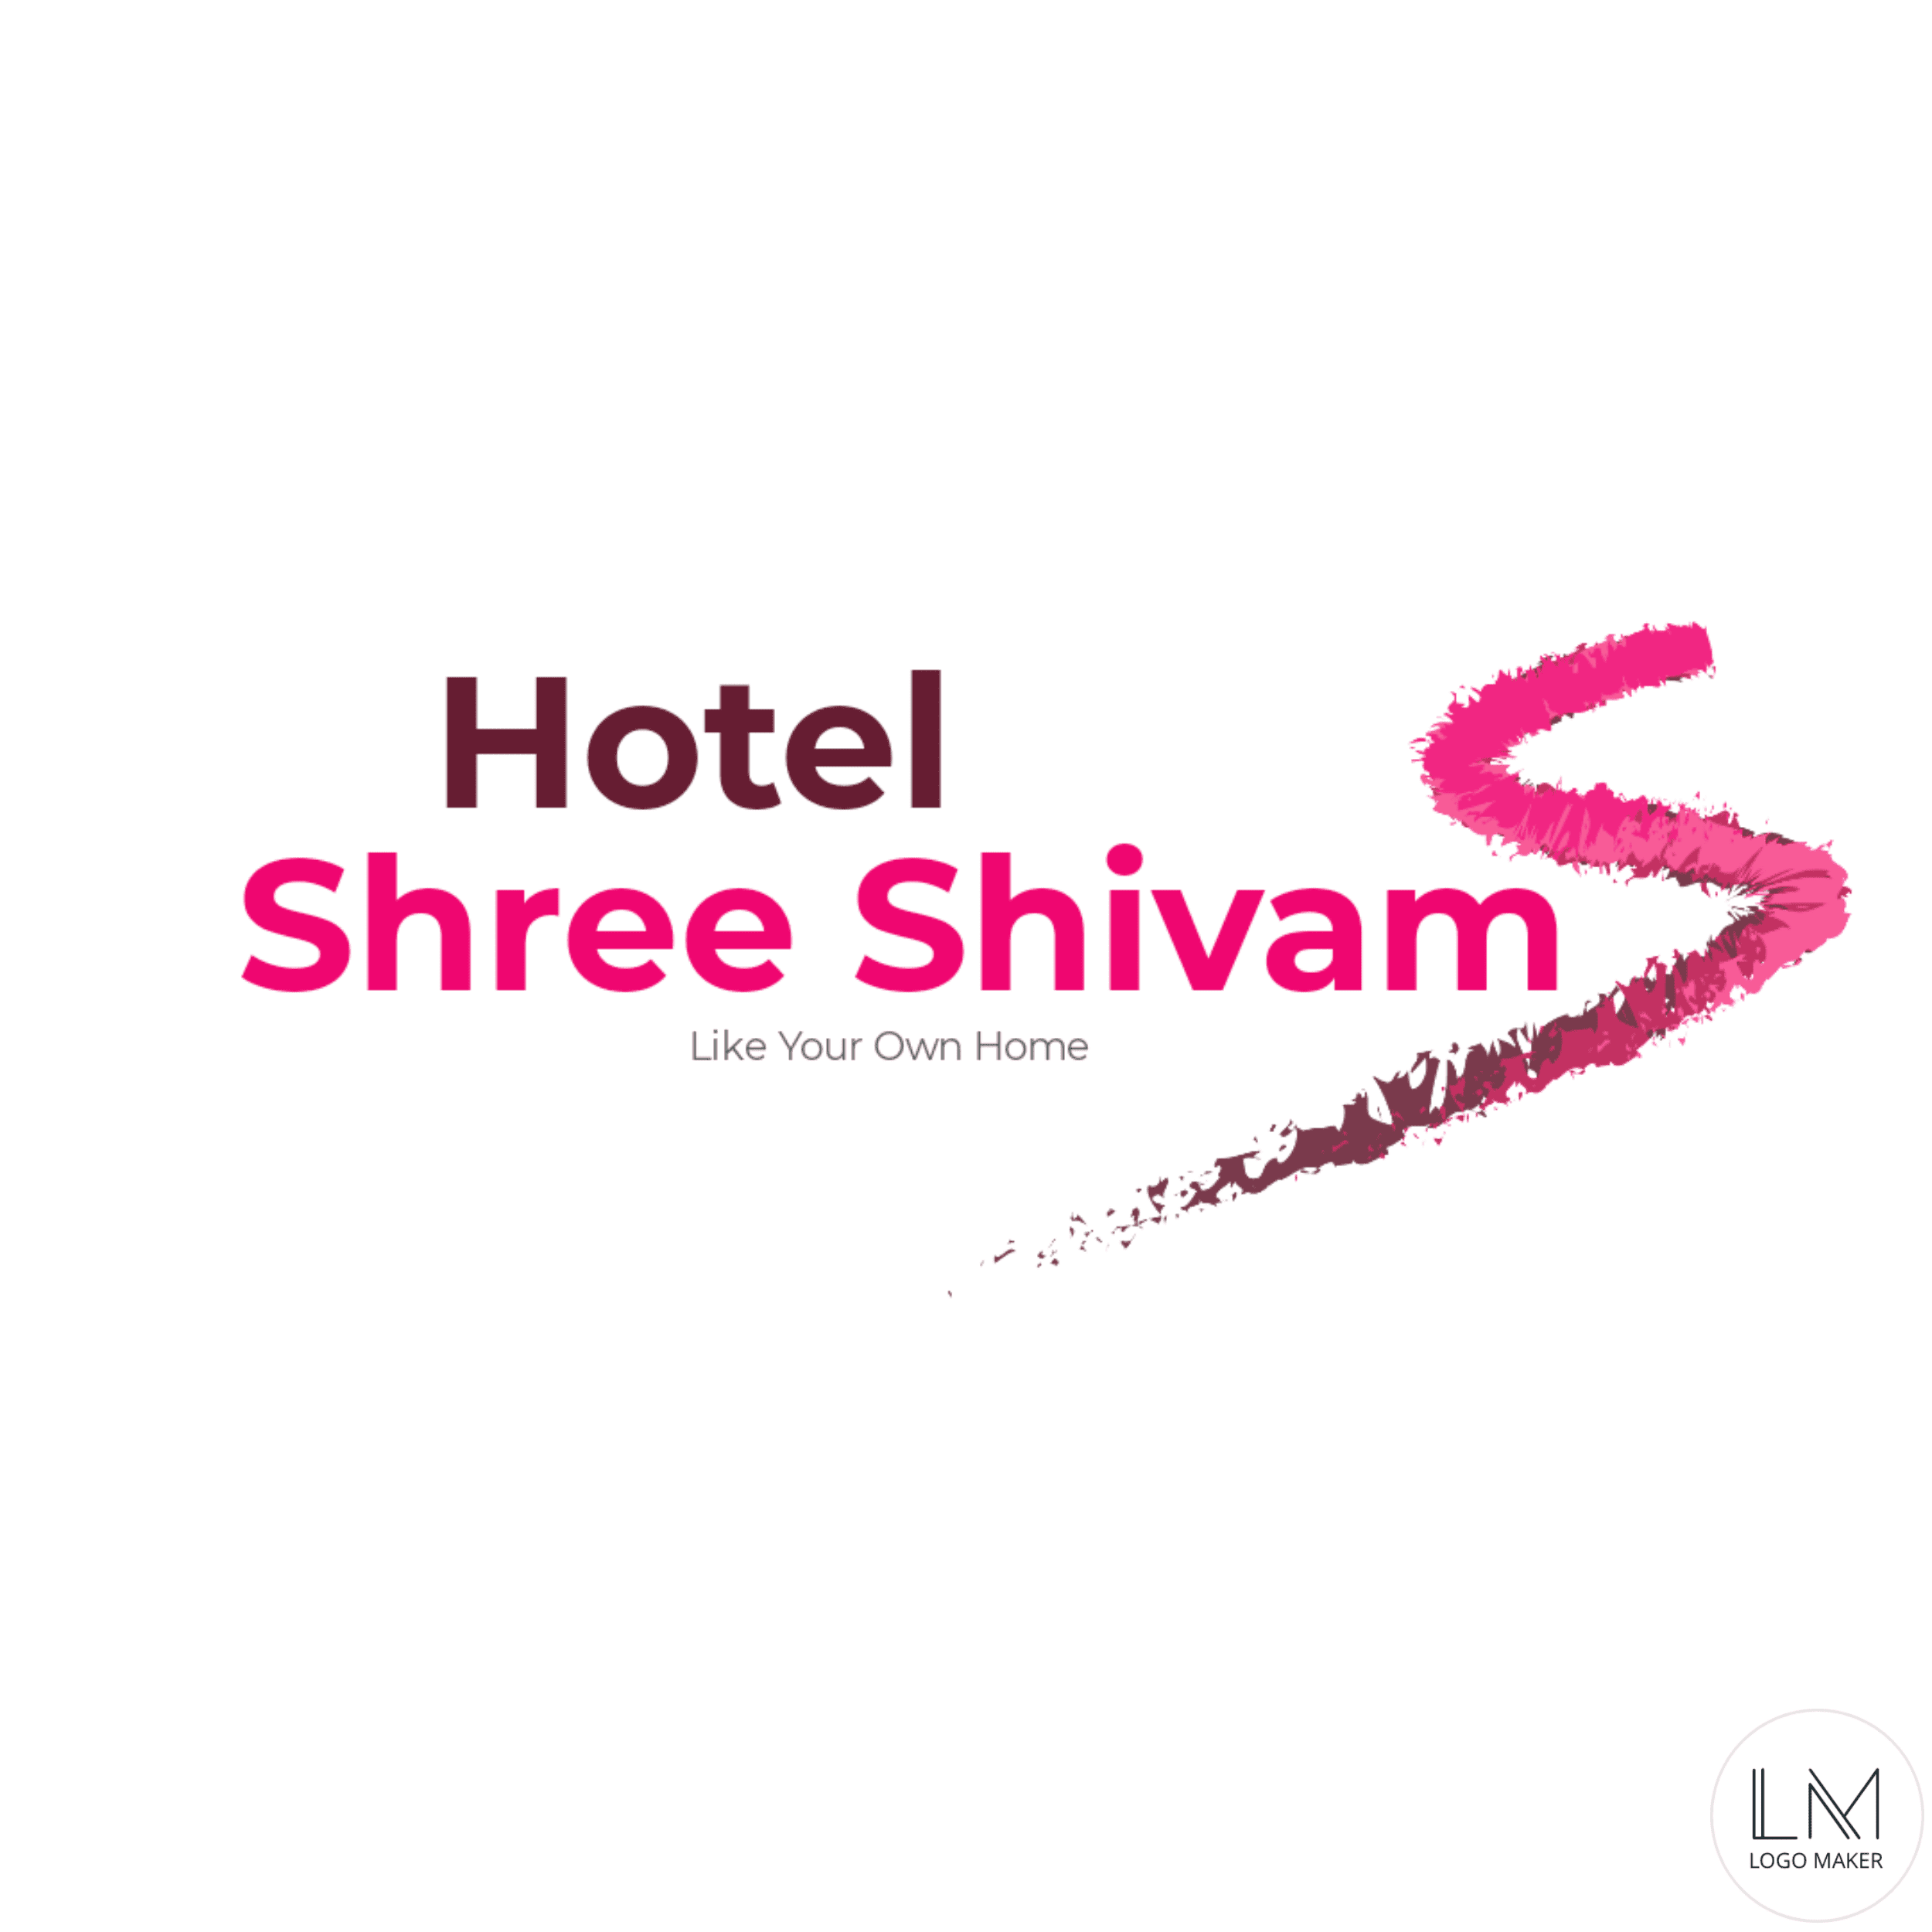 Hotel Shree Shivam